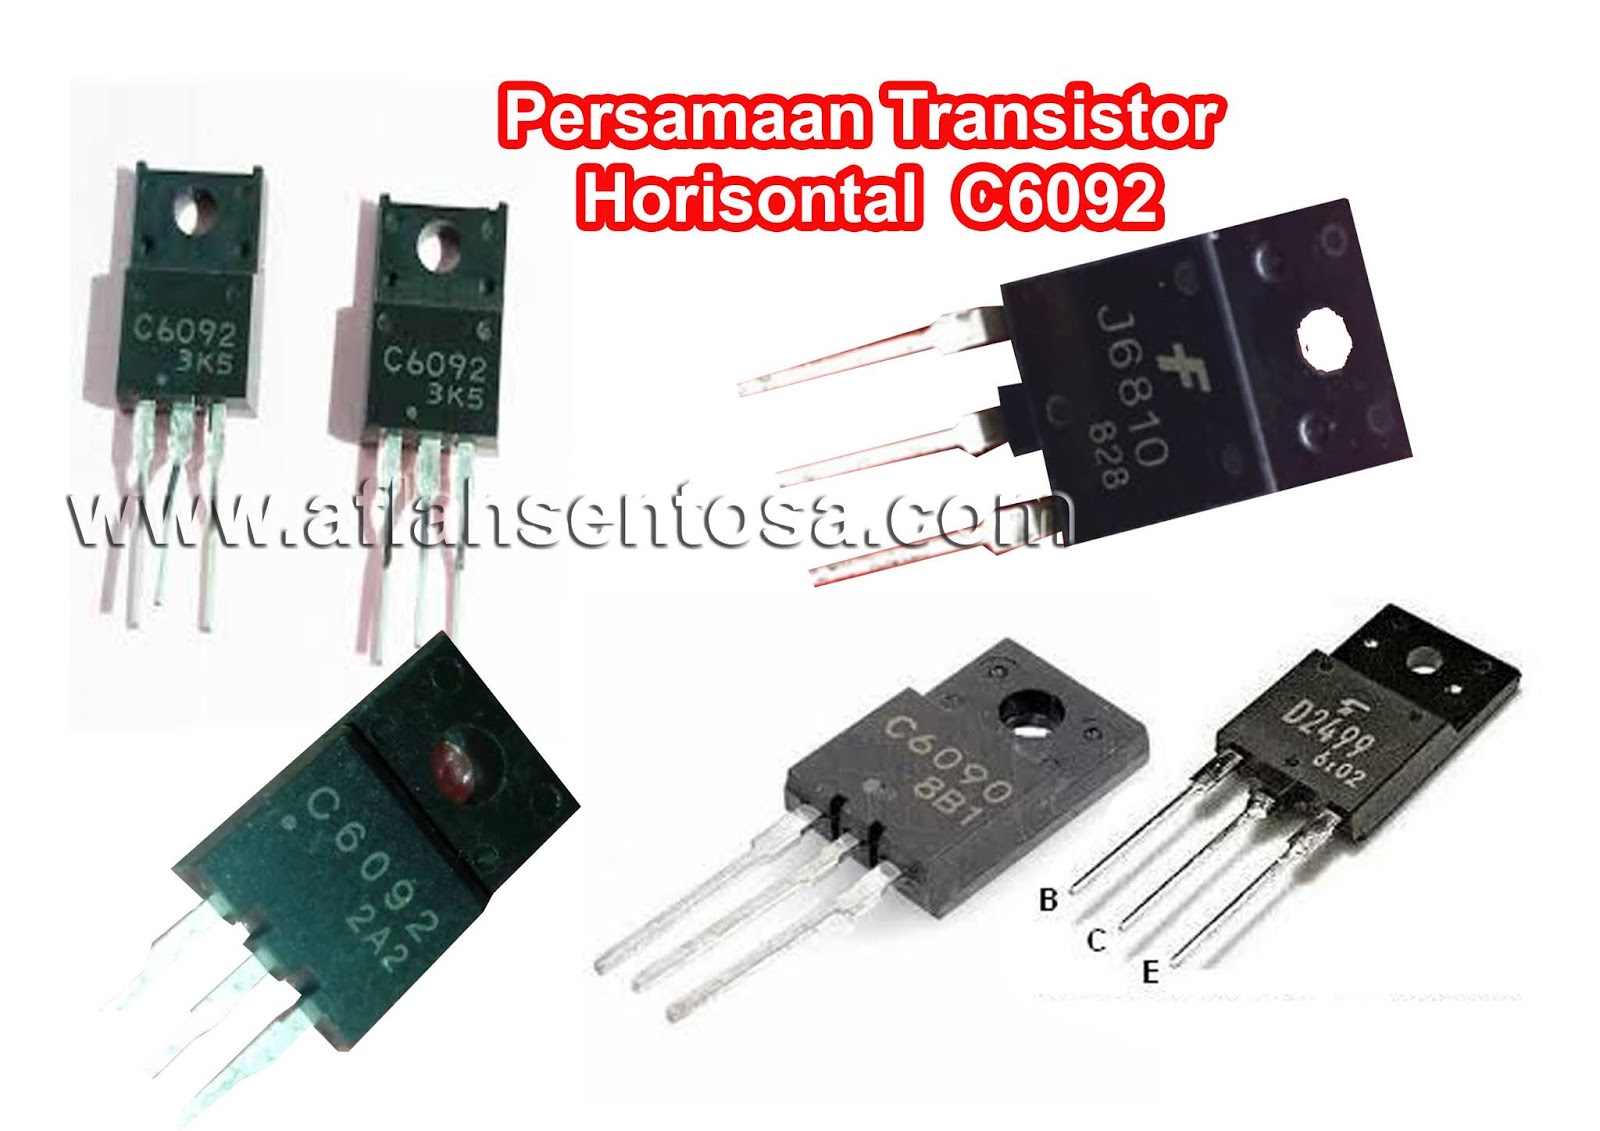 Persamaan Transistor Horisontal C6092 Aflah Sentosa